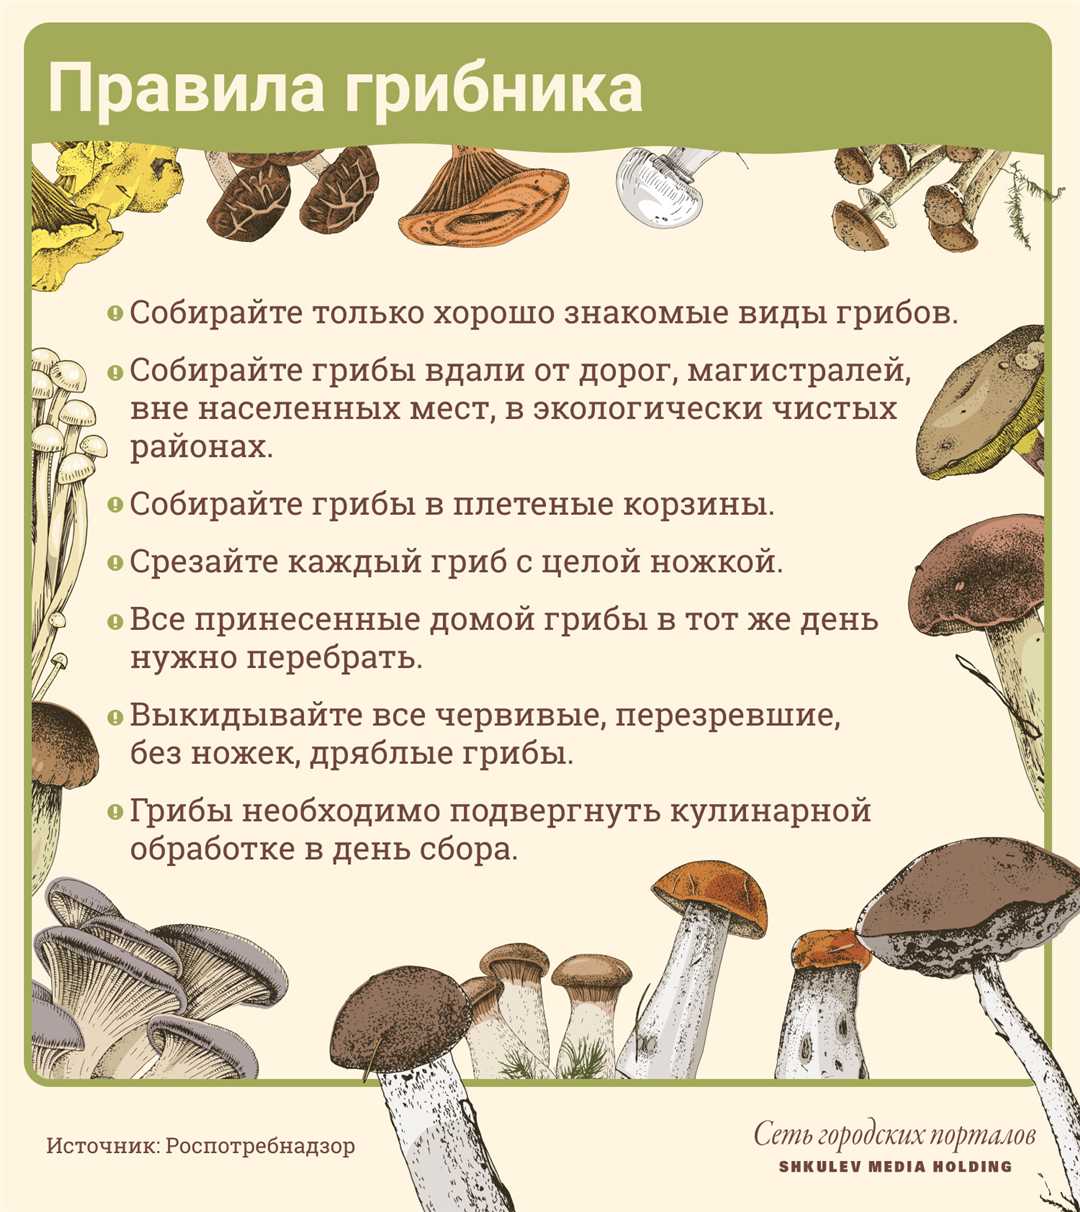 Съедобные и ядовитые грибы правила сбора грибов